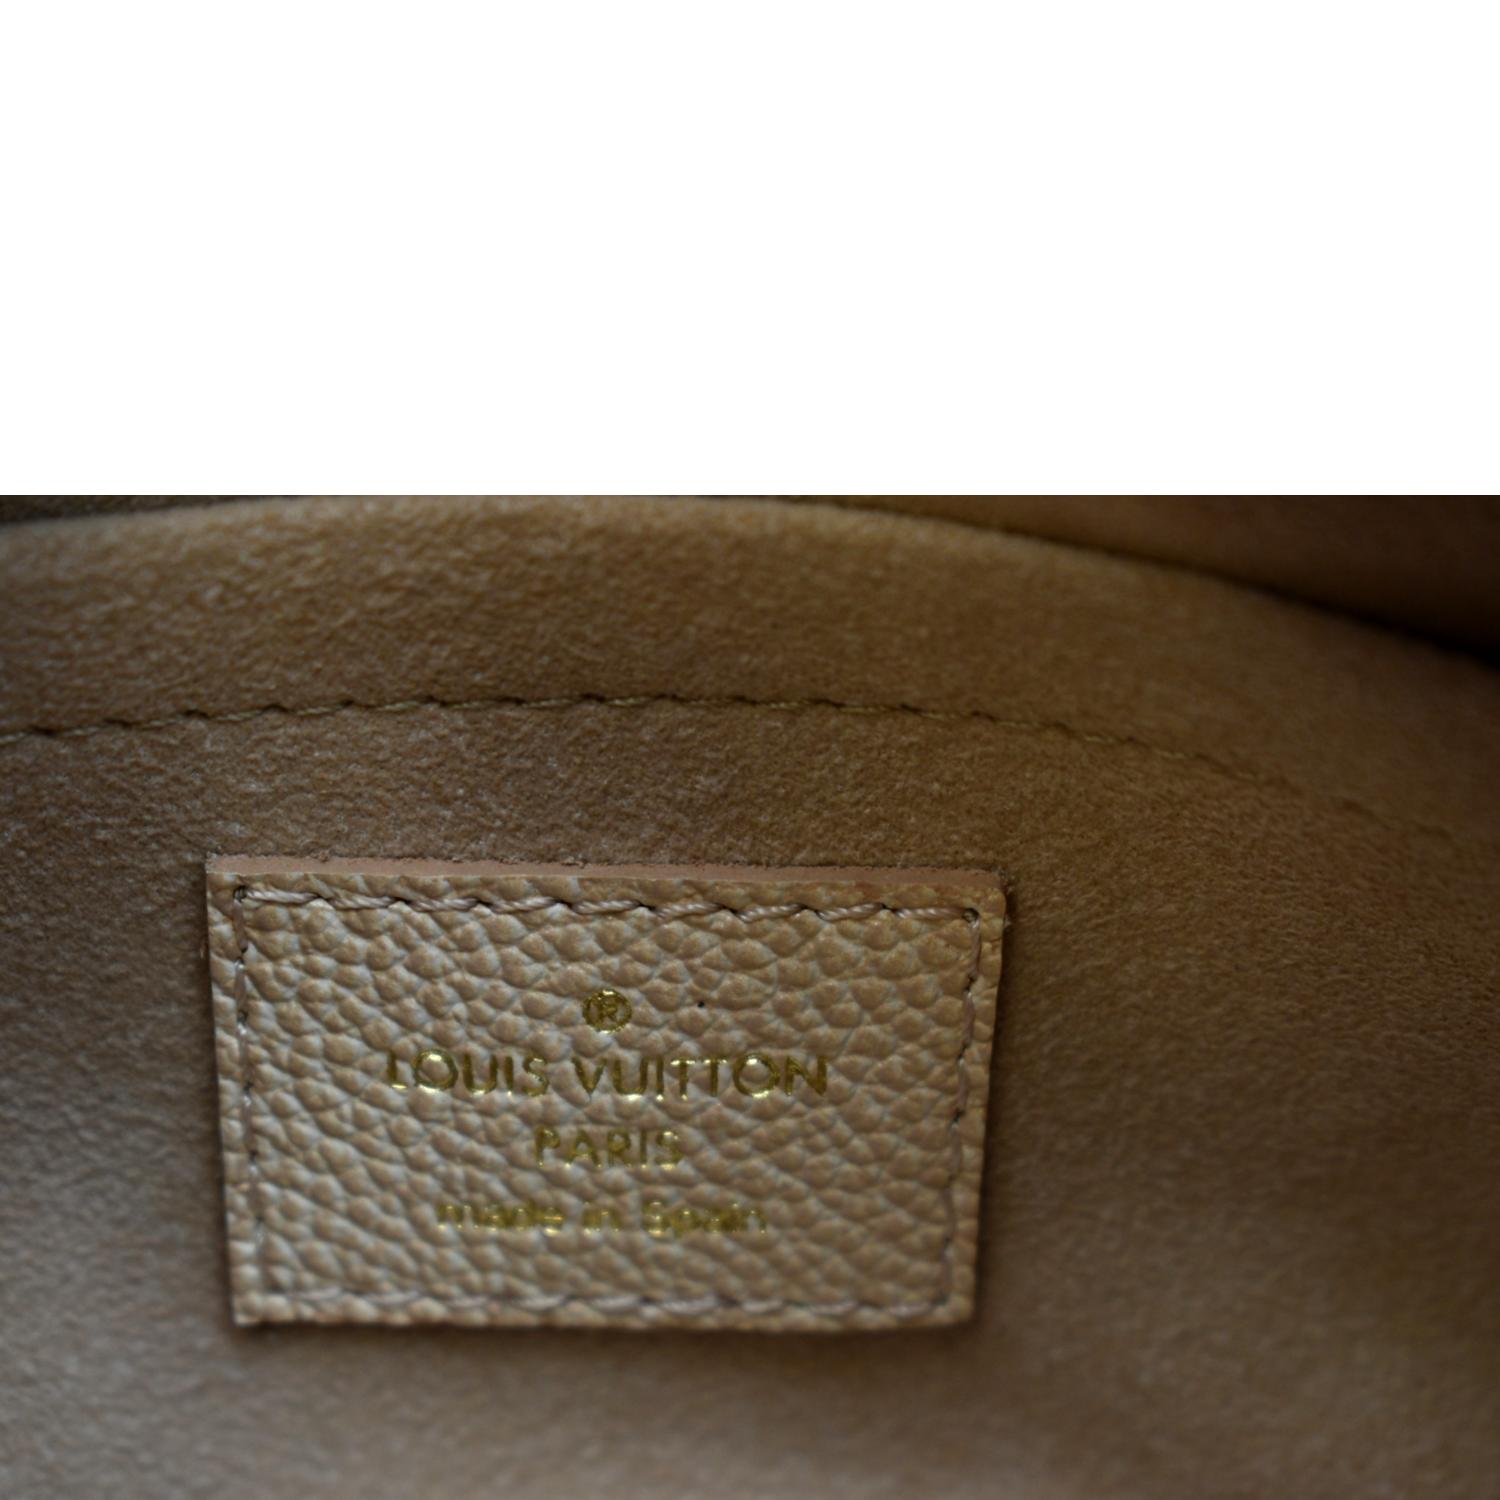 Louis Vuitton Speedy 20 Bandouliere, Stardust Beige, New in Box - GA001